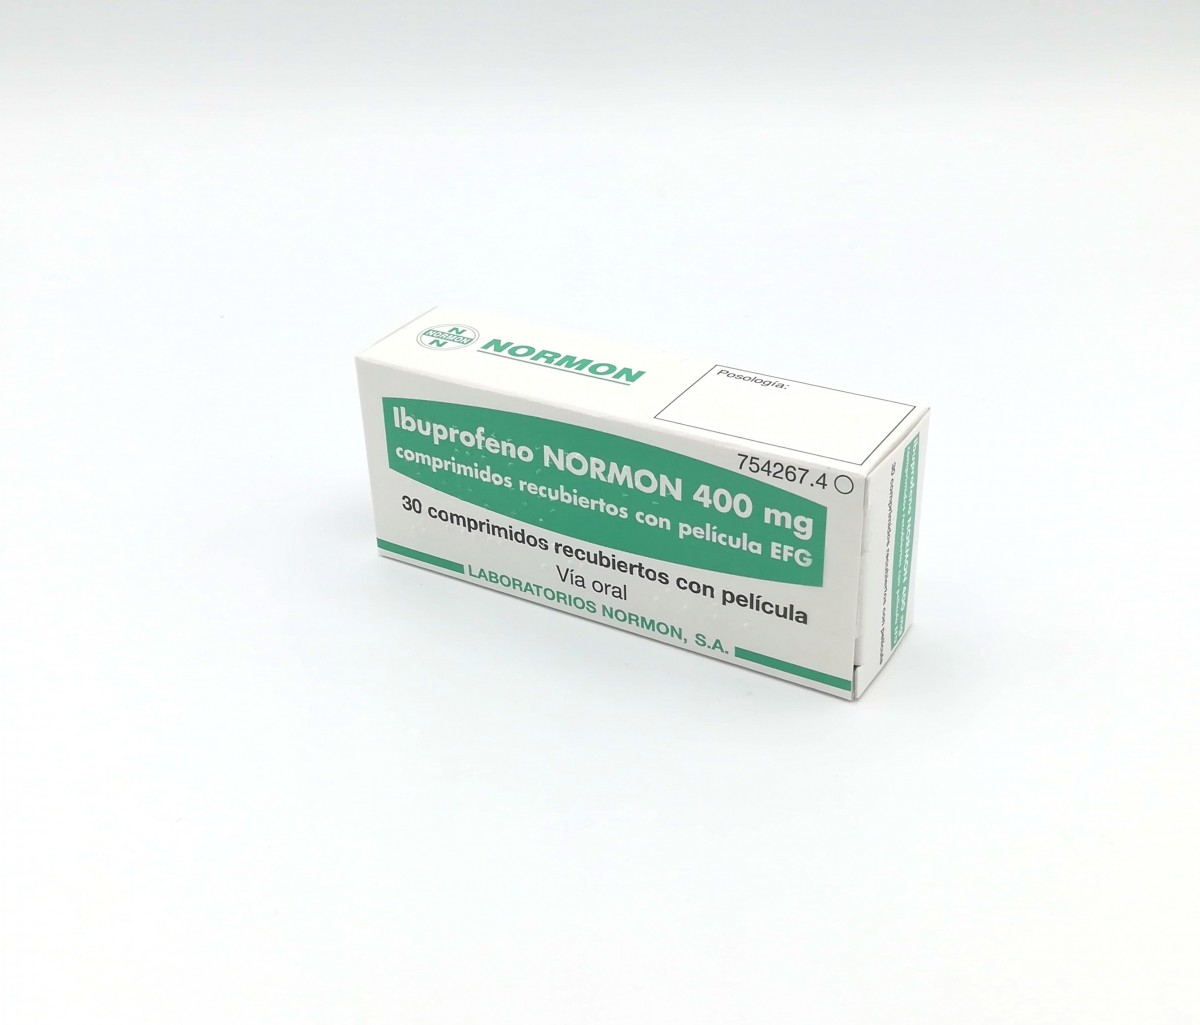 IBUPROFENO NORMON 400 mg COMPRIMIDOS RECUBIERTOS CON PELICULA EFG , 500 comprimidos fotografía del envase.